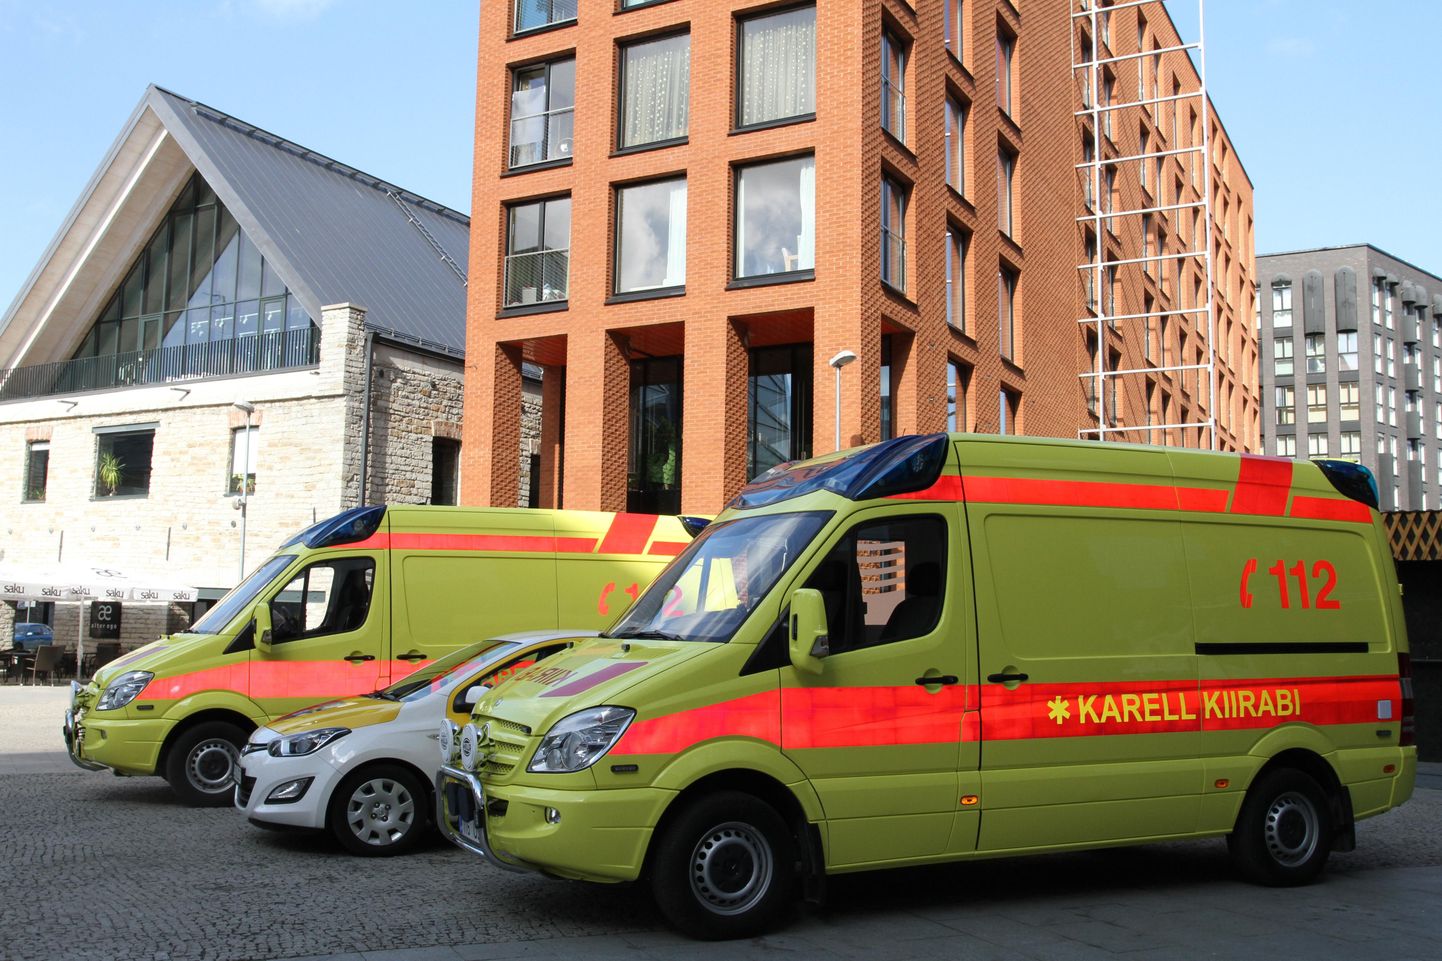 Karell kiirabi uued kiirabiautod.